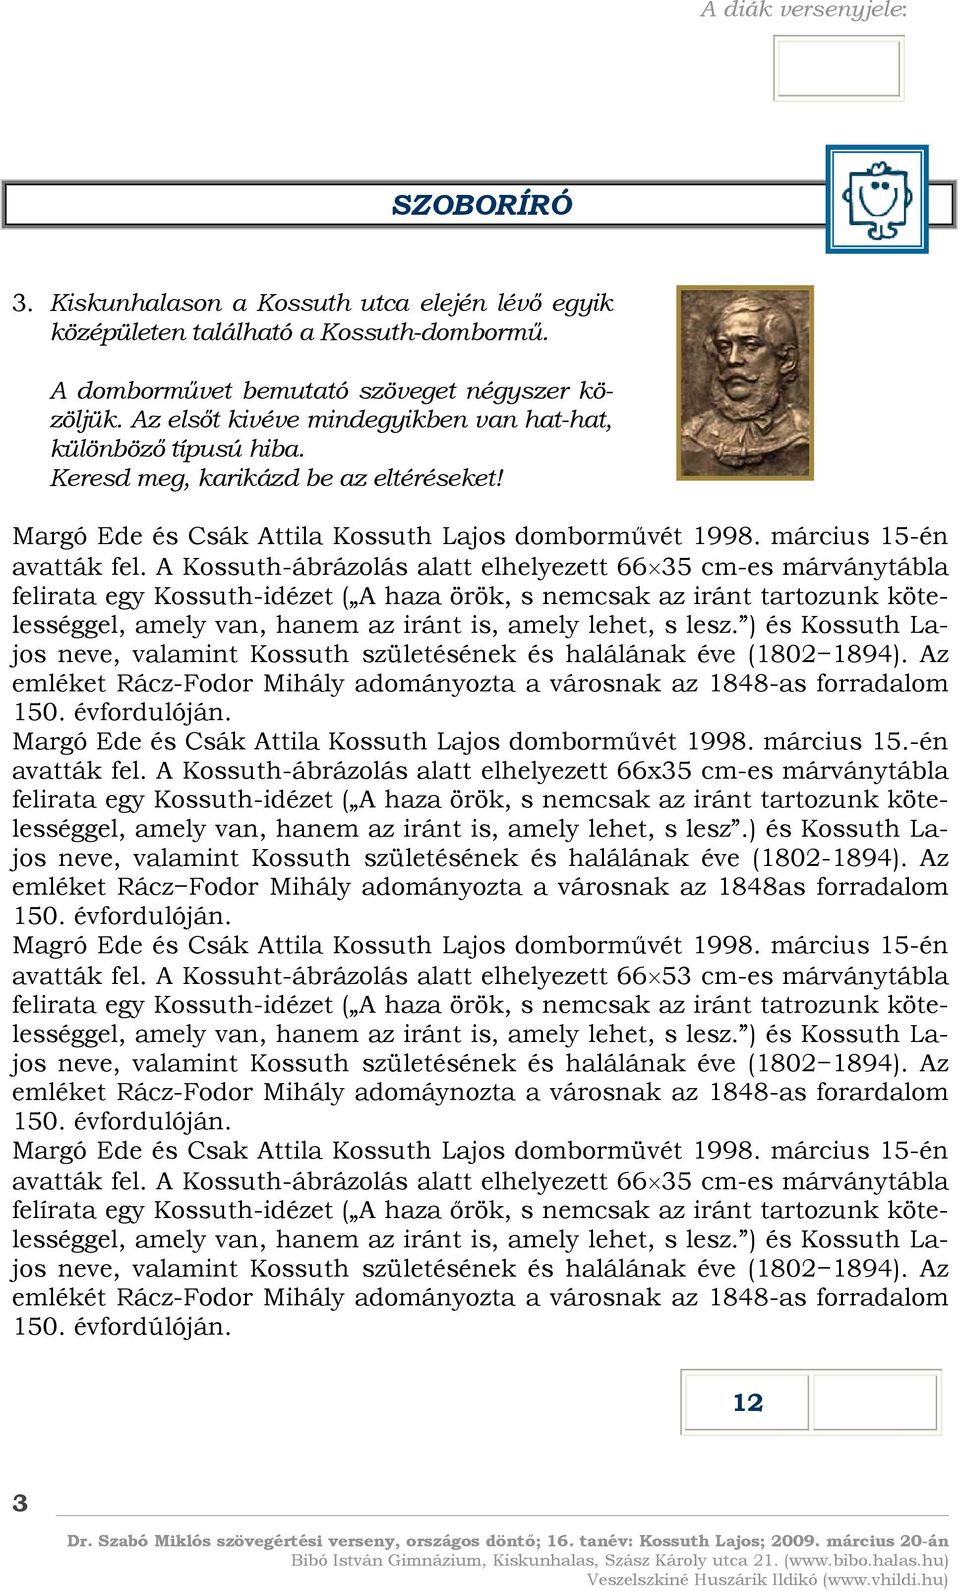 A Kossuth-ábrázolás alatt elhelyezett 66 35 cm-es márványtábla felirata egy Kossuth-idézet ( A haza örök, s nemcsak az iránt tartozunk kötelességgel, amely van, hanem az iránt is, amely lehet, s lesz.